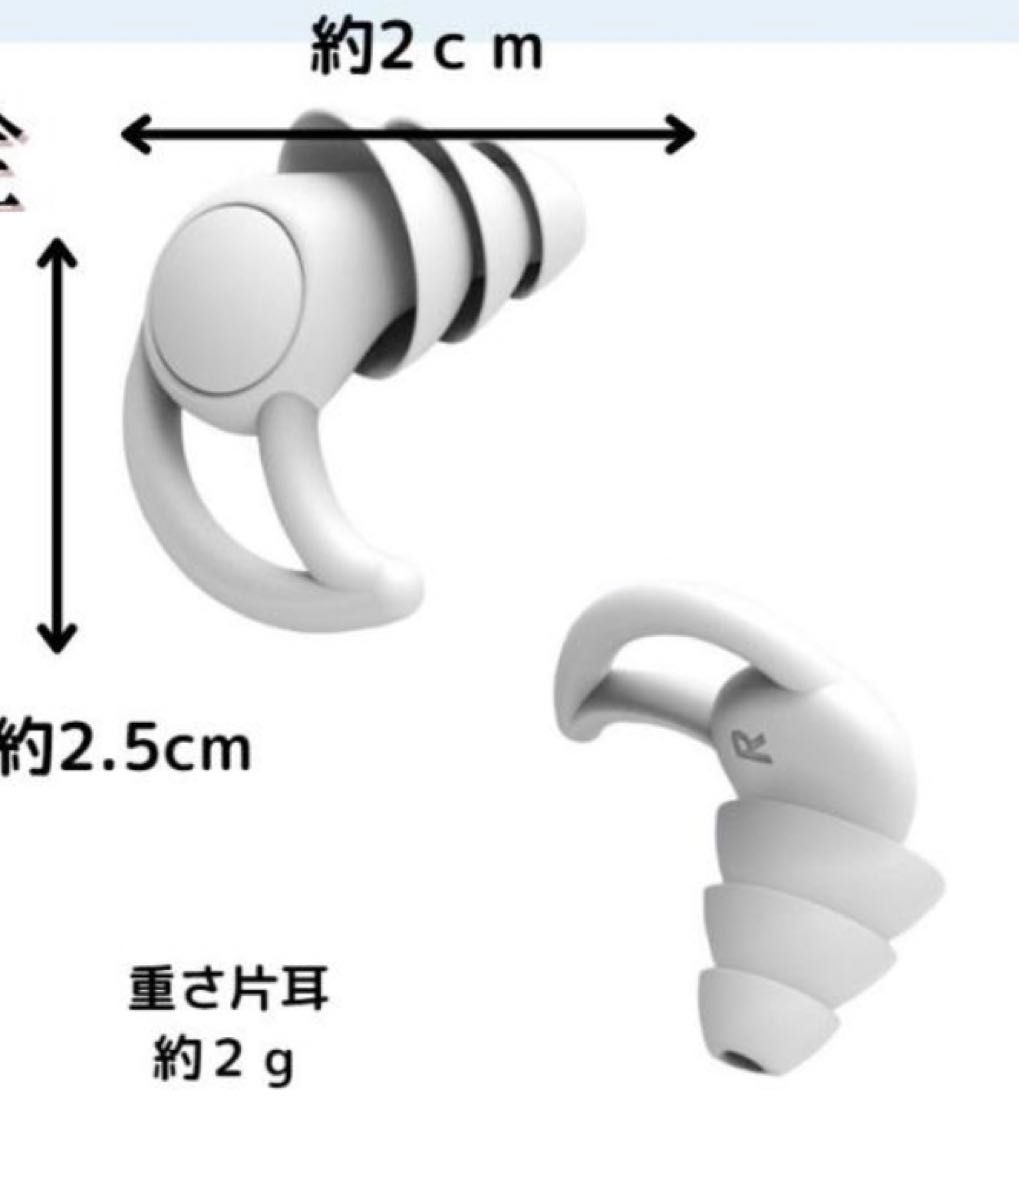 ケース 耳栓 遮音 聴覚保護 シリコン製 フィット感 防音 いびき対策 3層構造 快眠安眠 白